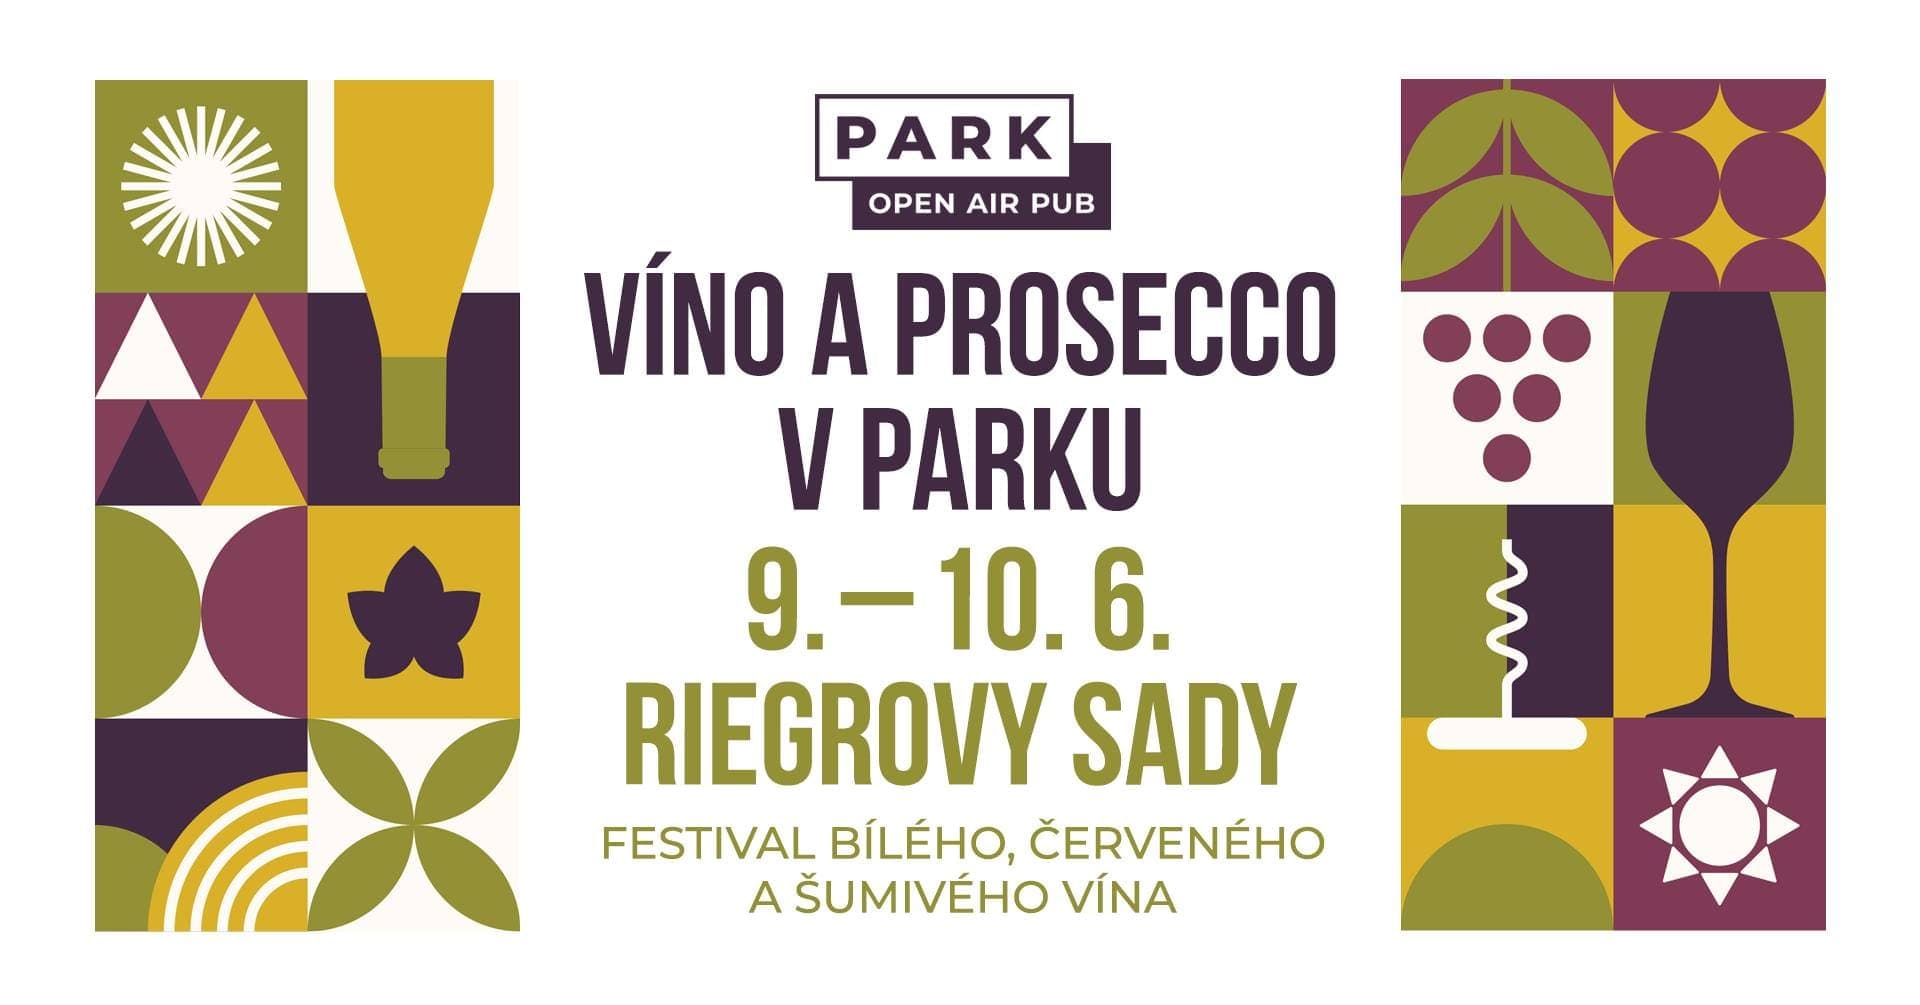 9 и 10 июня в Риегровых садах в Праге пройдет фестиваль вина и просекко